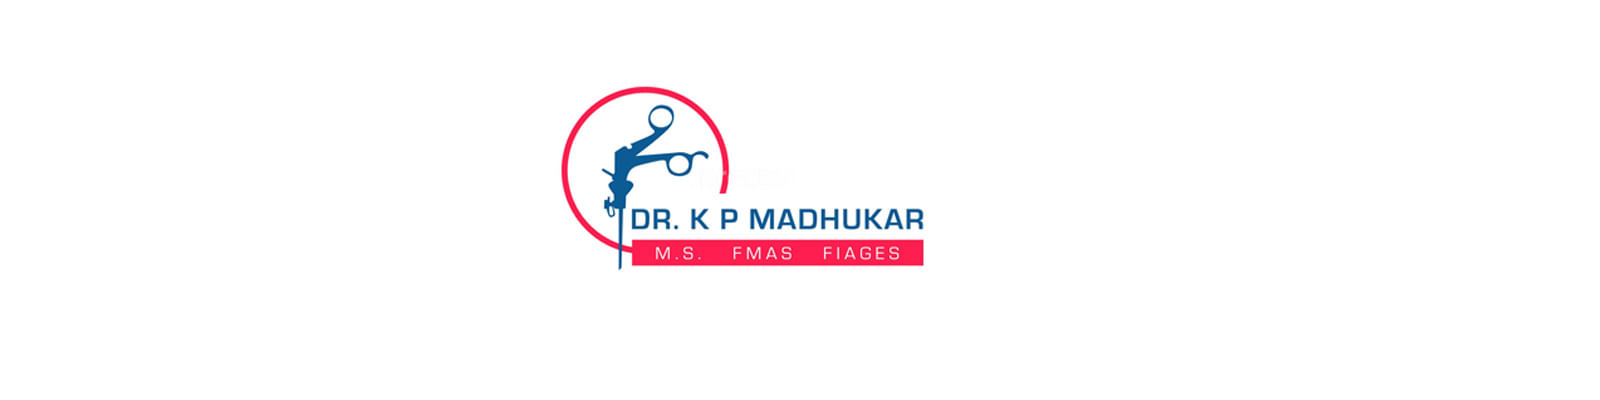 Madhukar'S Clinic